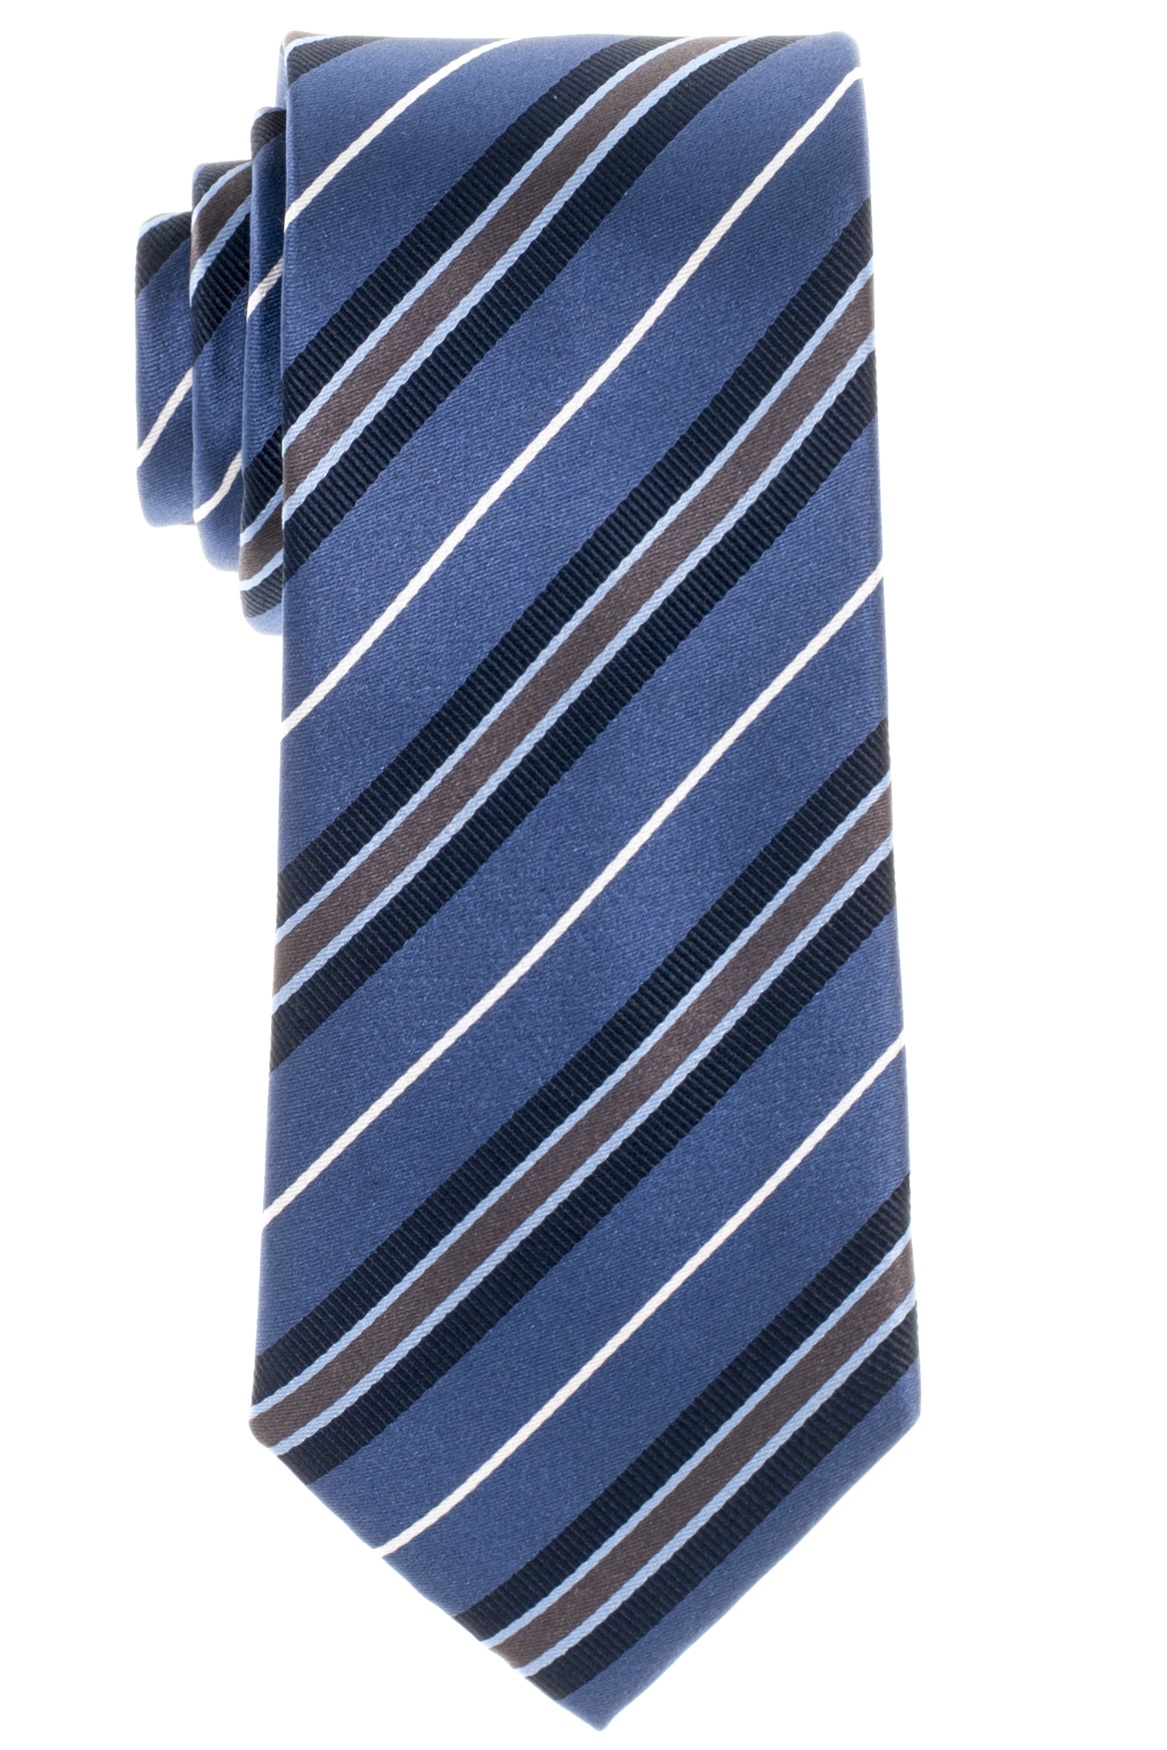 ETERNA 72 in Extra Krawatte und Lang marine Hemden grau-braun blau | und cm Gestreifte Eterna weiß 68 + Olymp